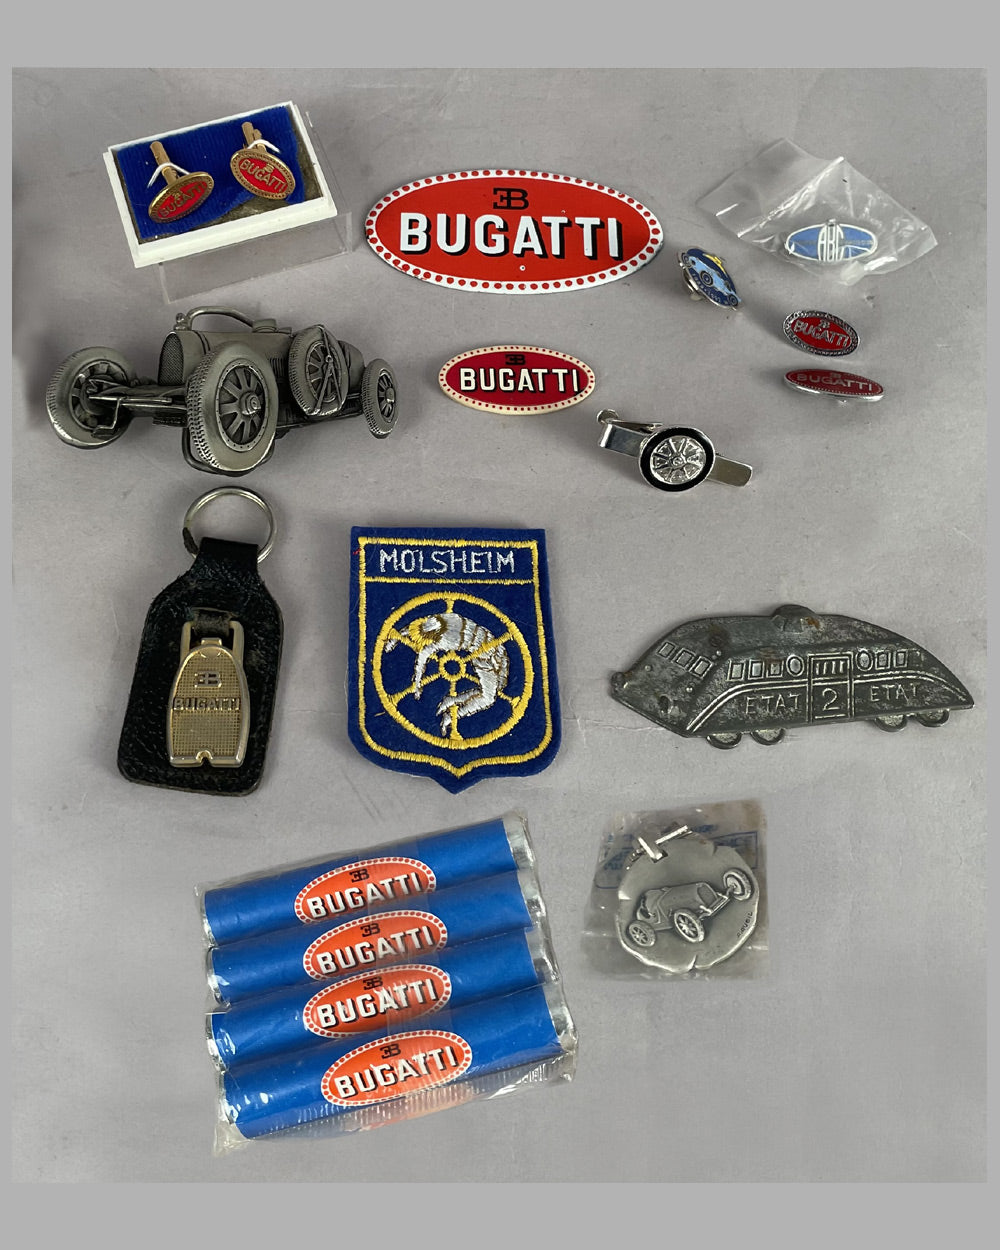 Collection of 14 Bugatti memorabilia items